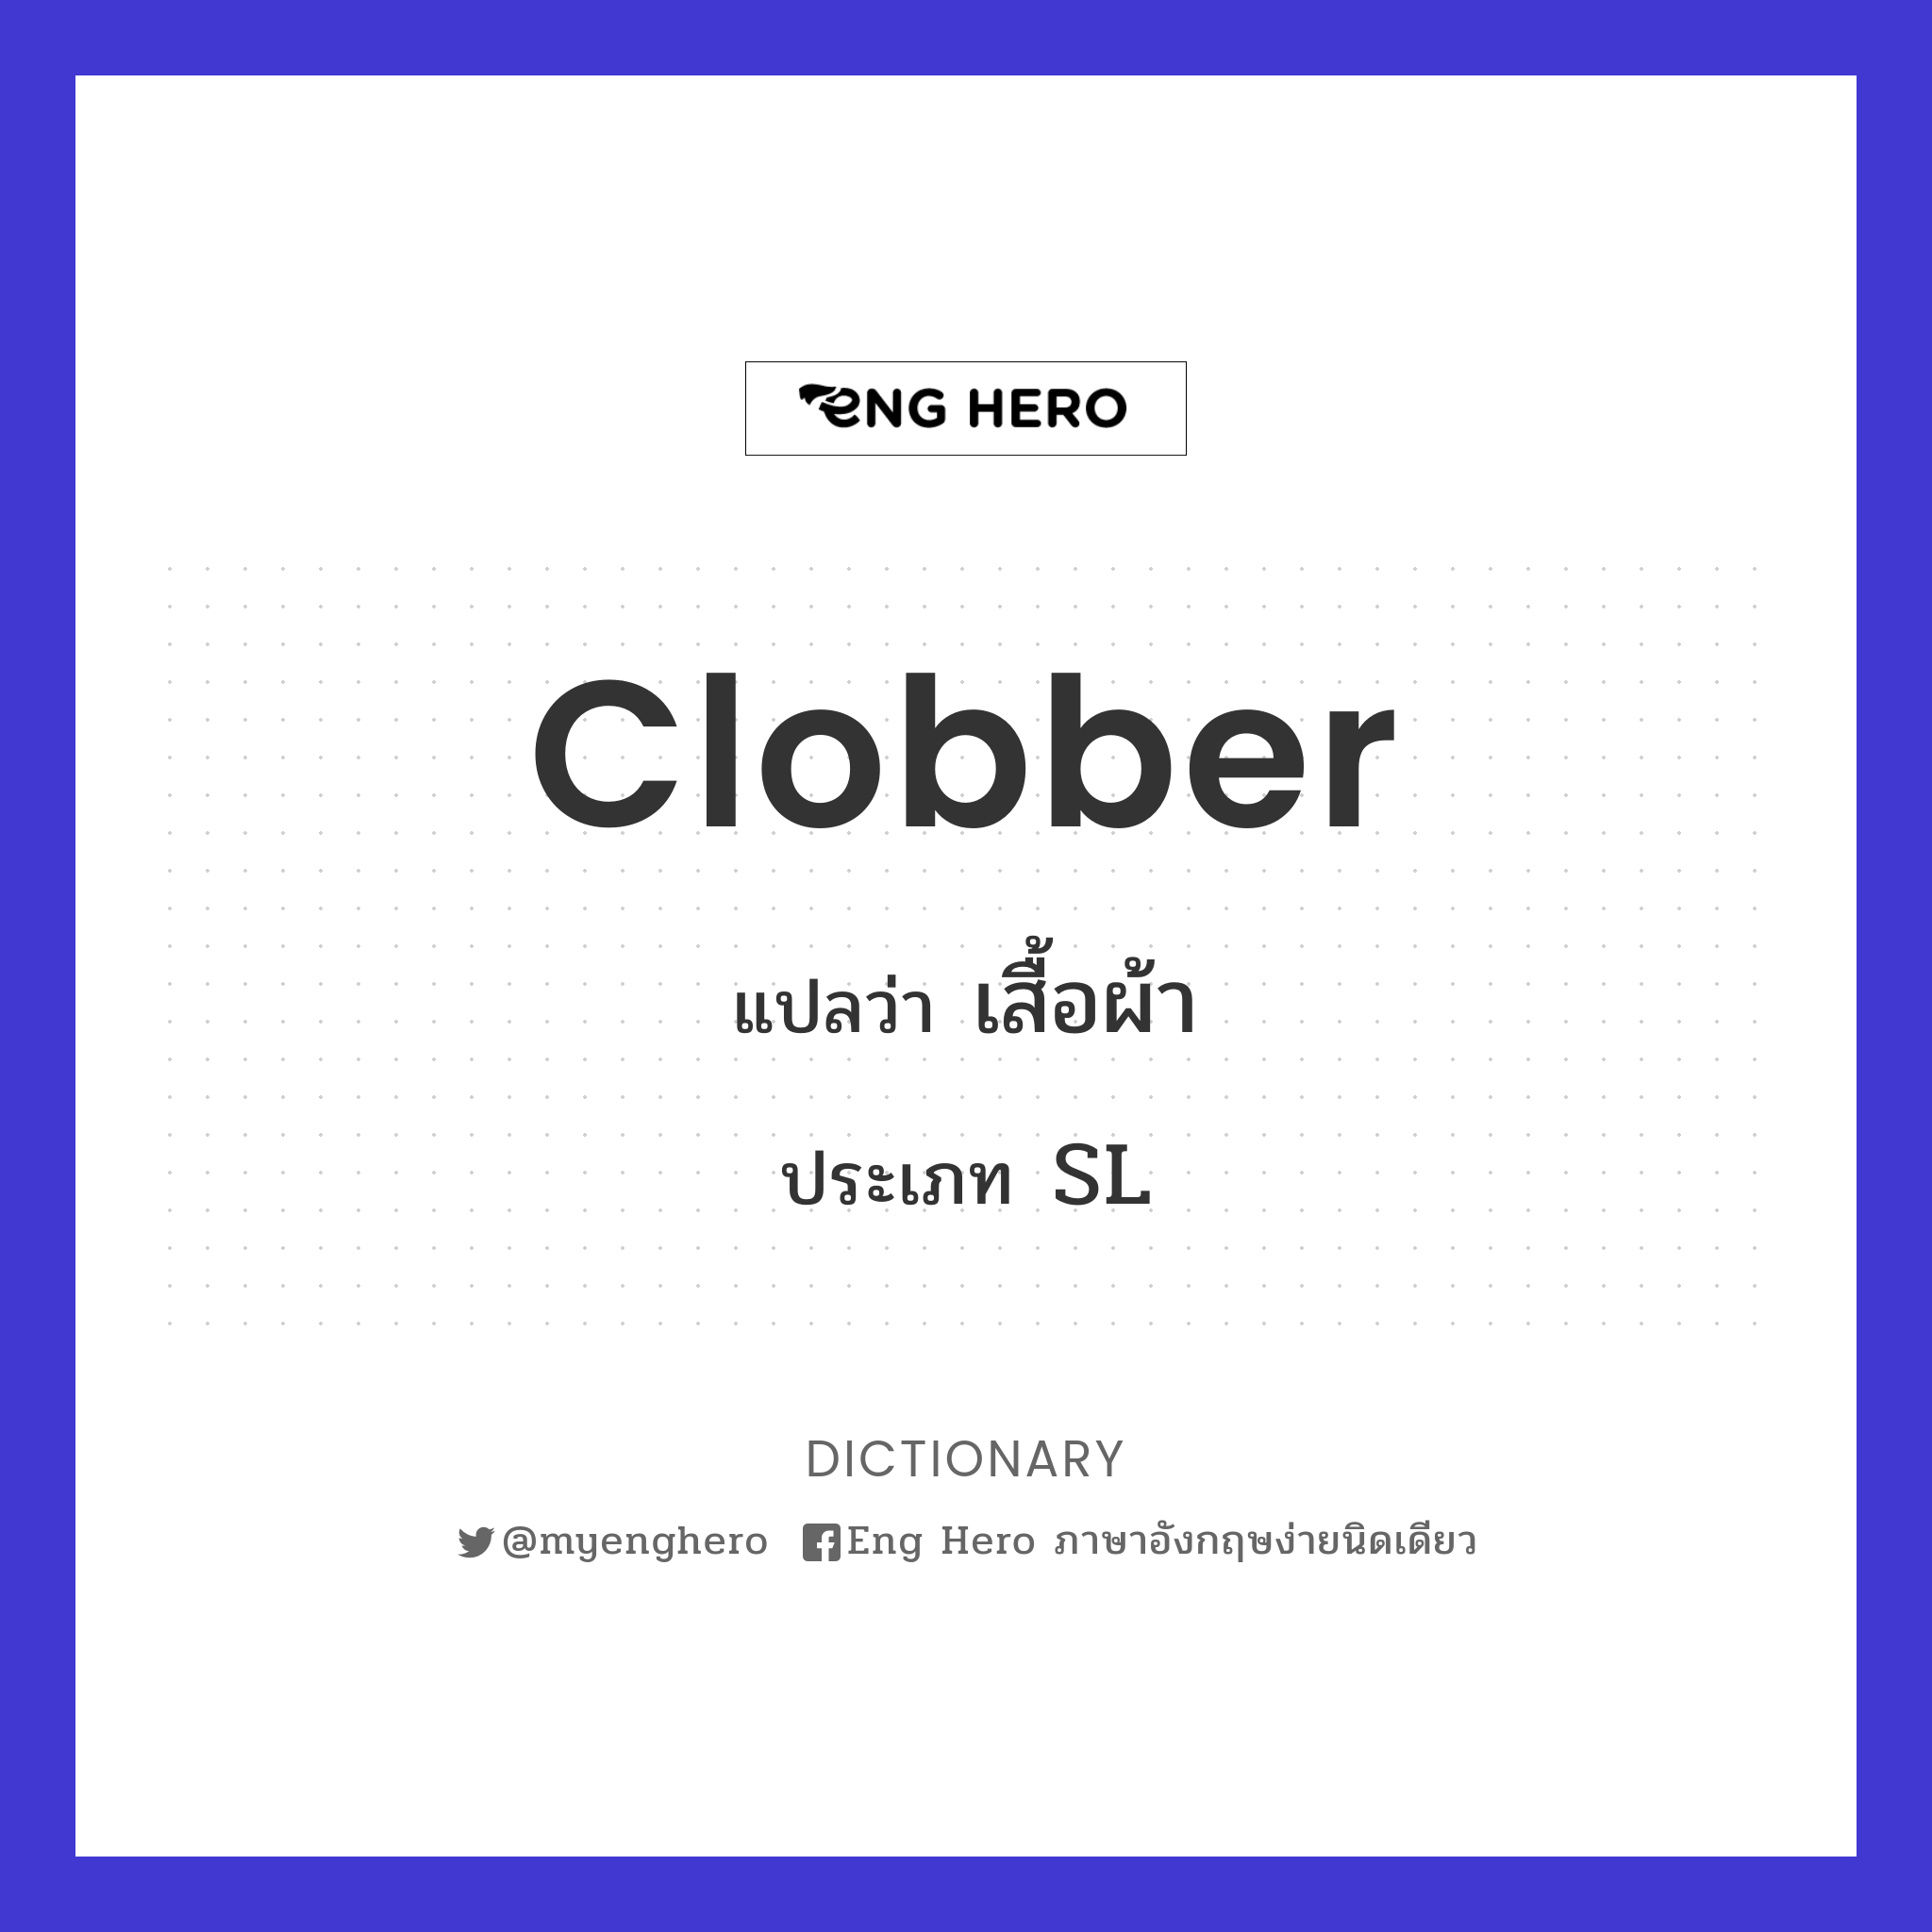 clobber